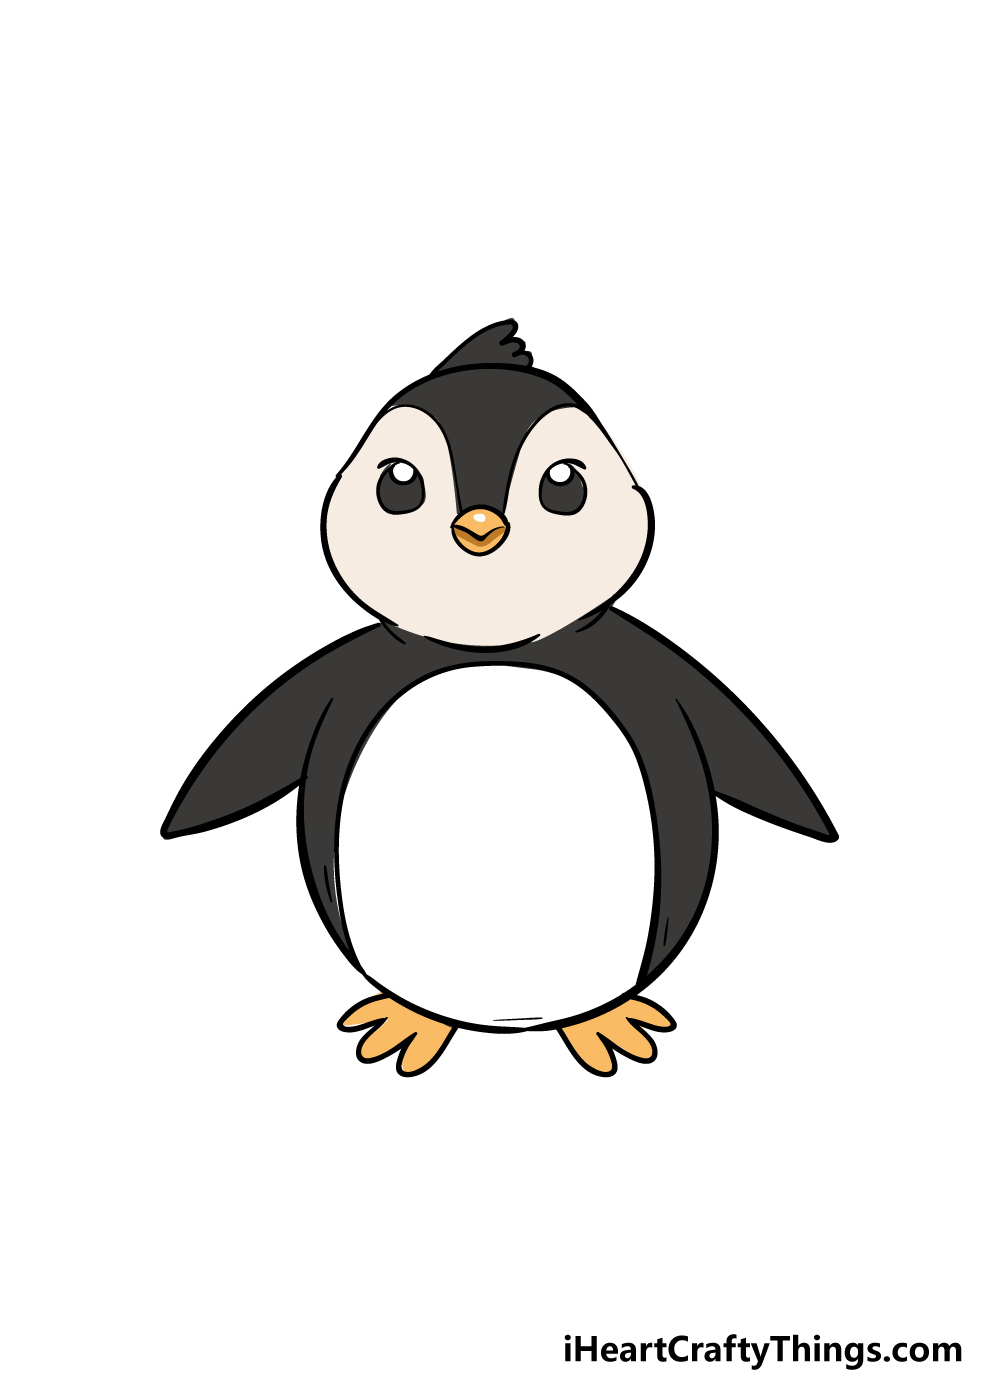 Penguin7 - Hướng dẫn cách vẽ chim cánh cụt đơn giản với 7 bước cơ bản